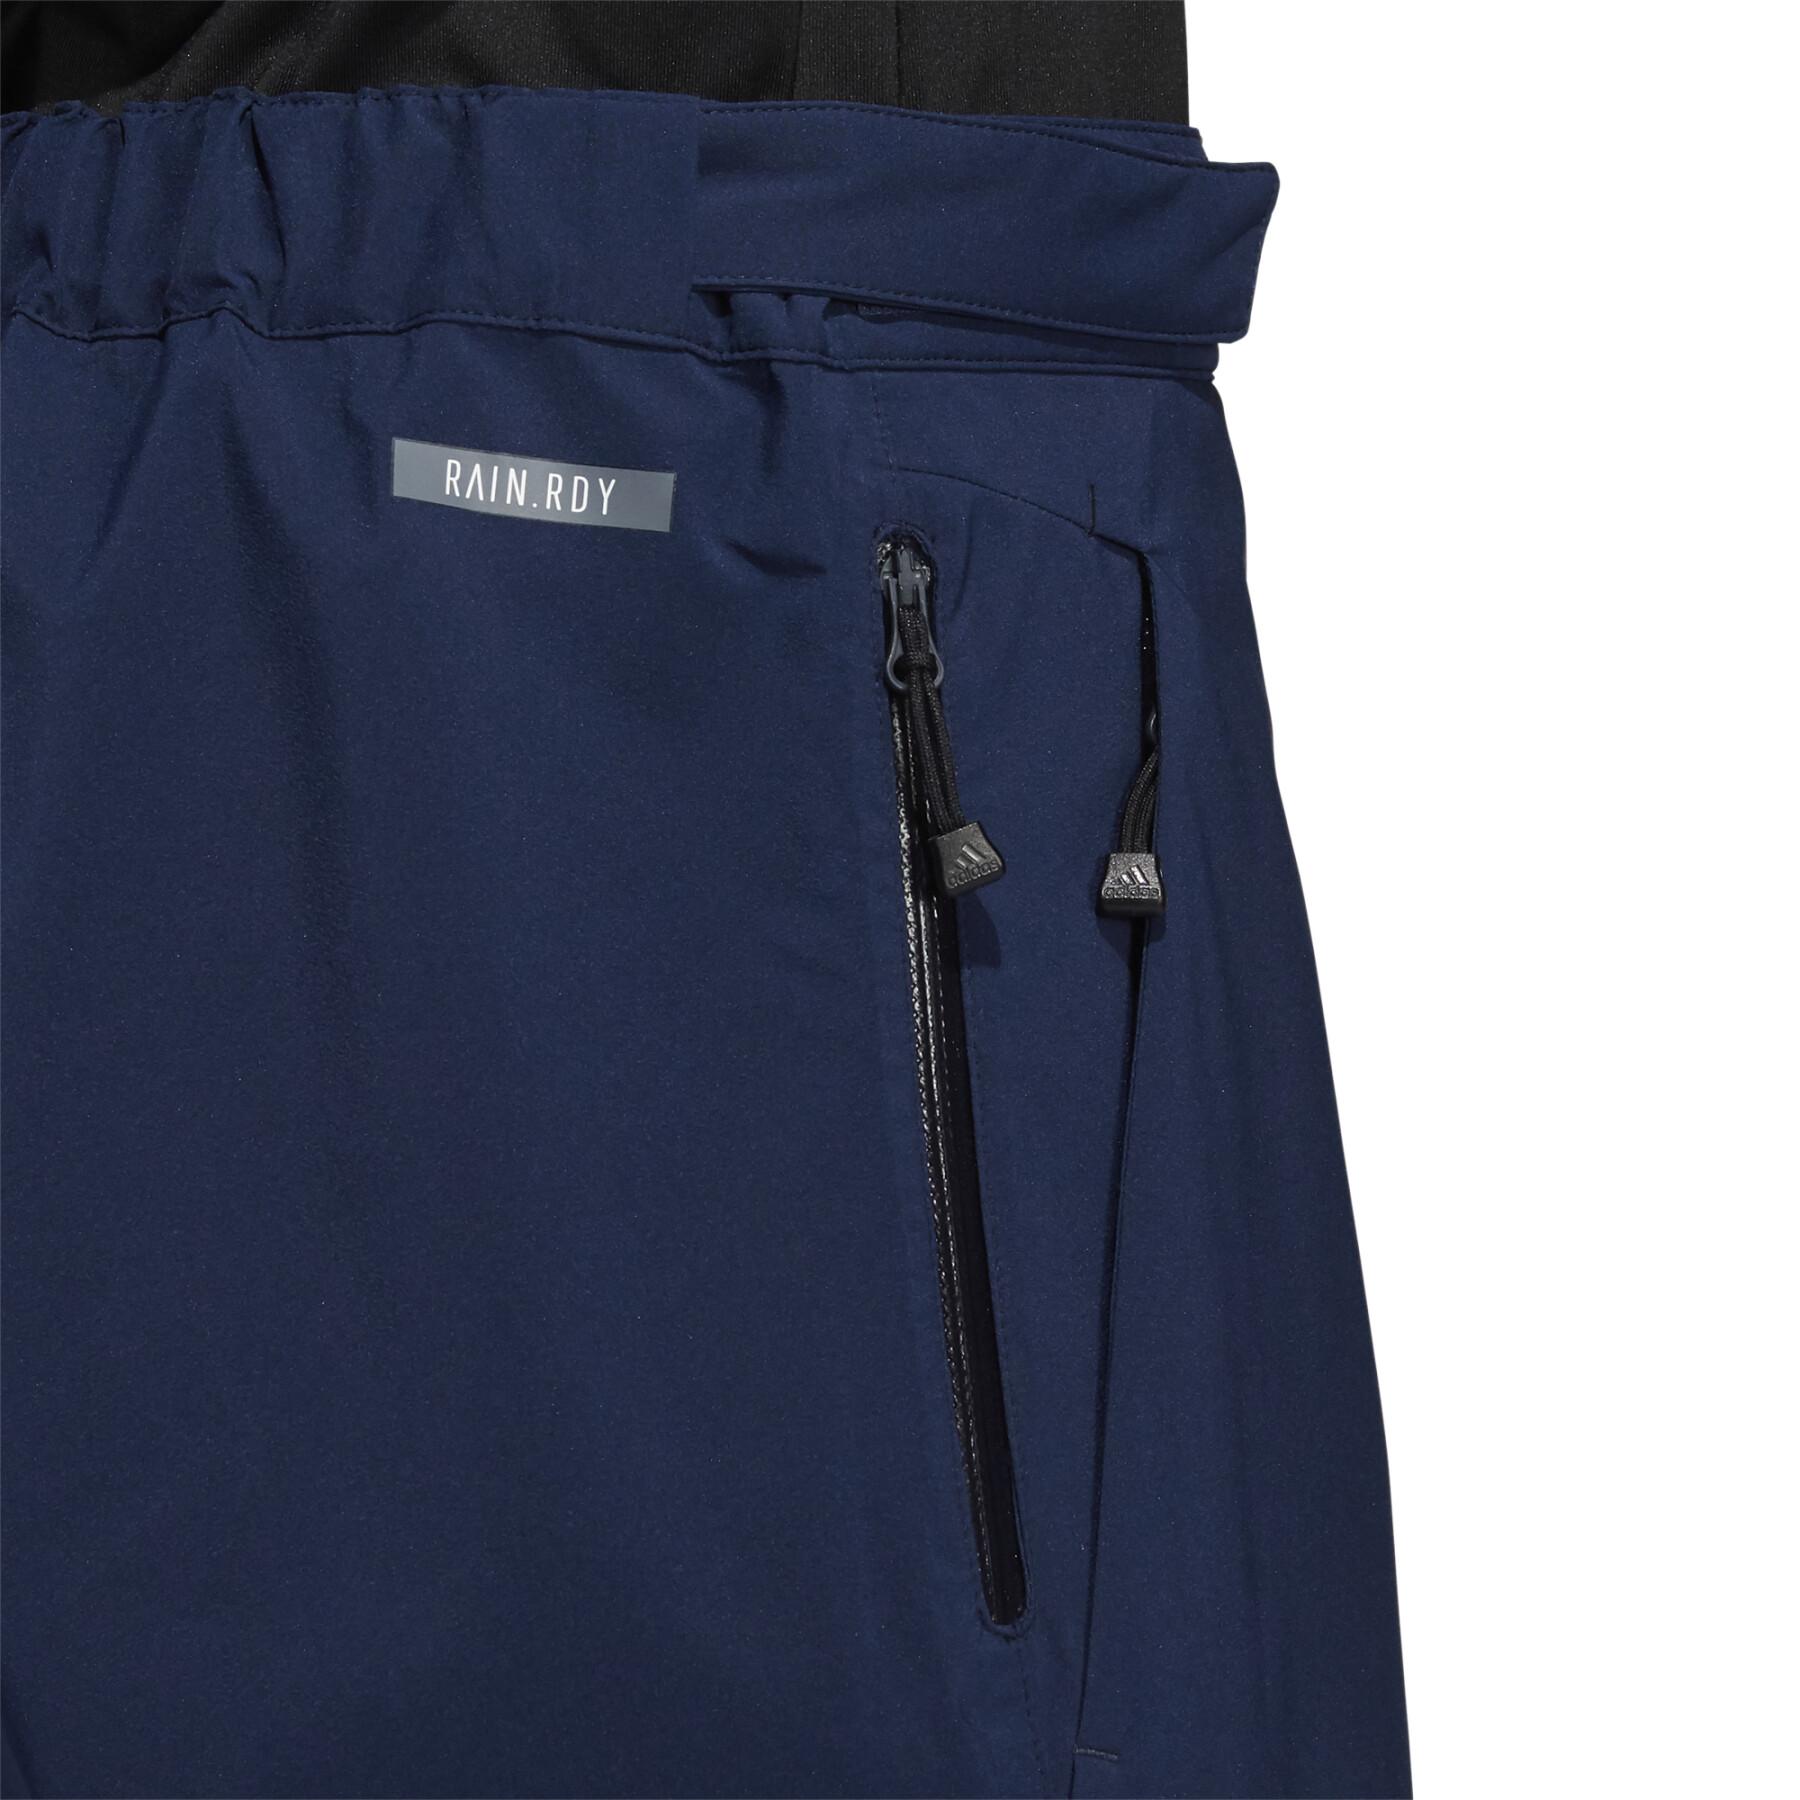 Waterproof trousers adidas